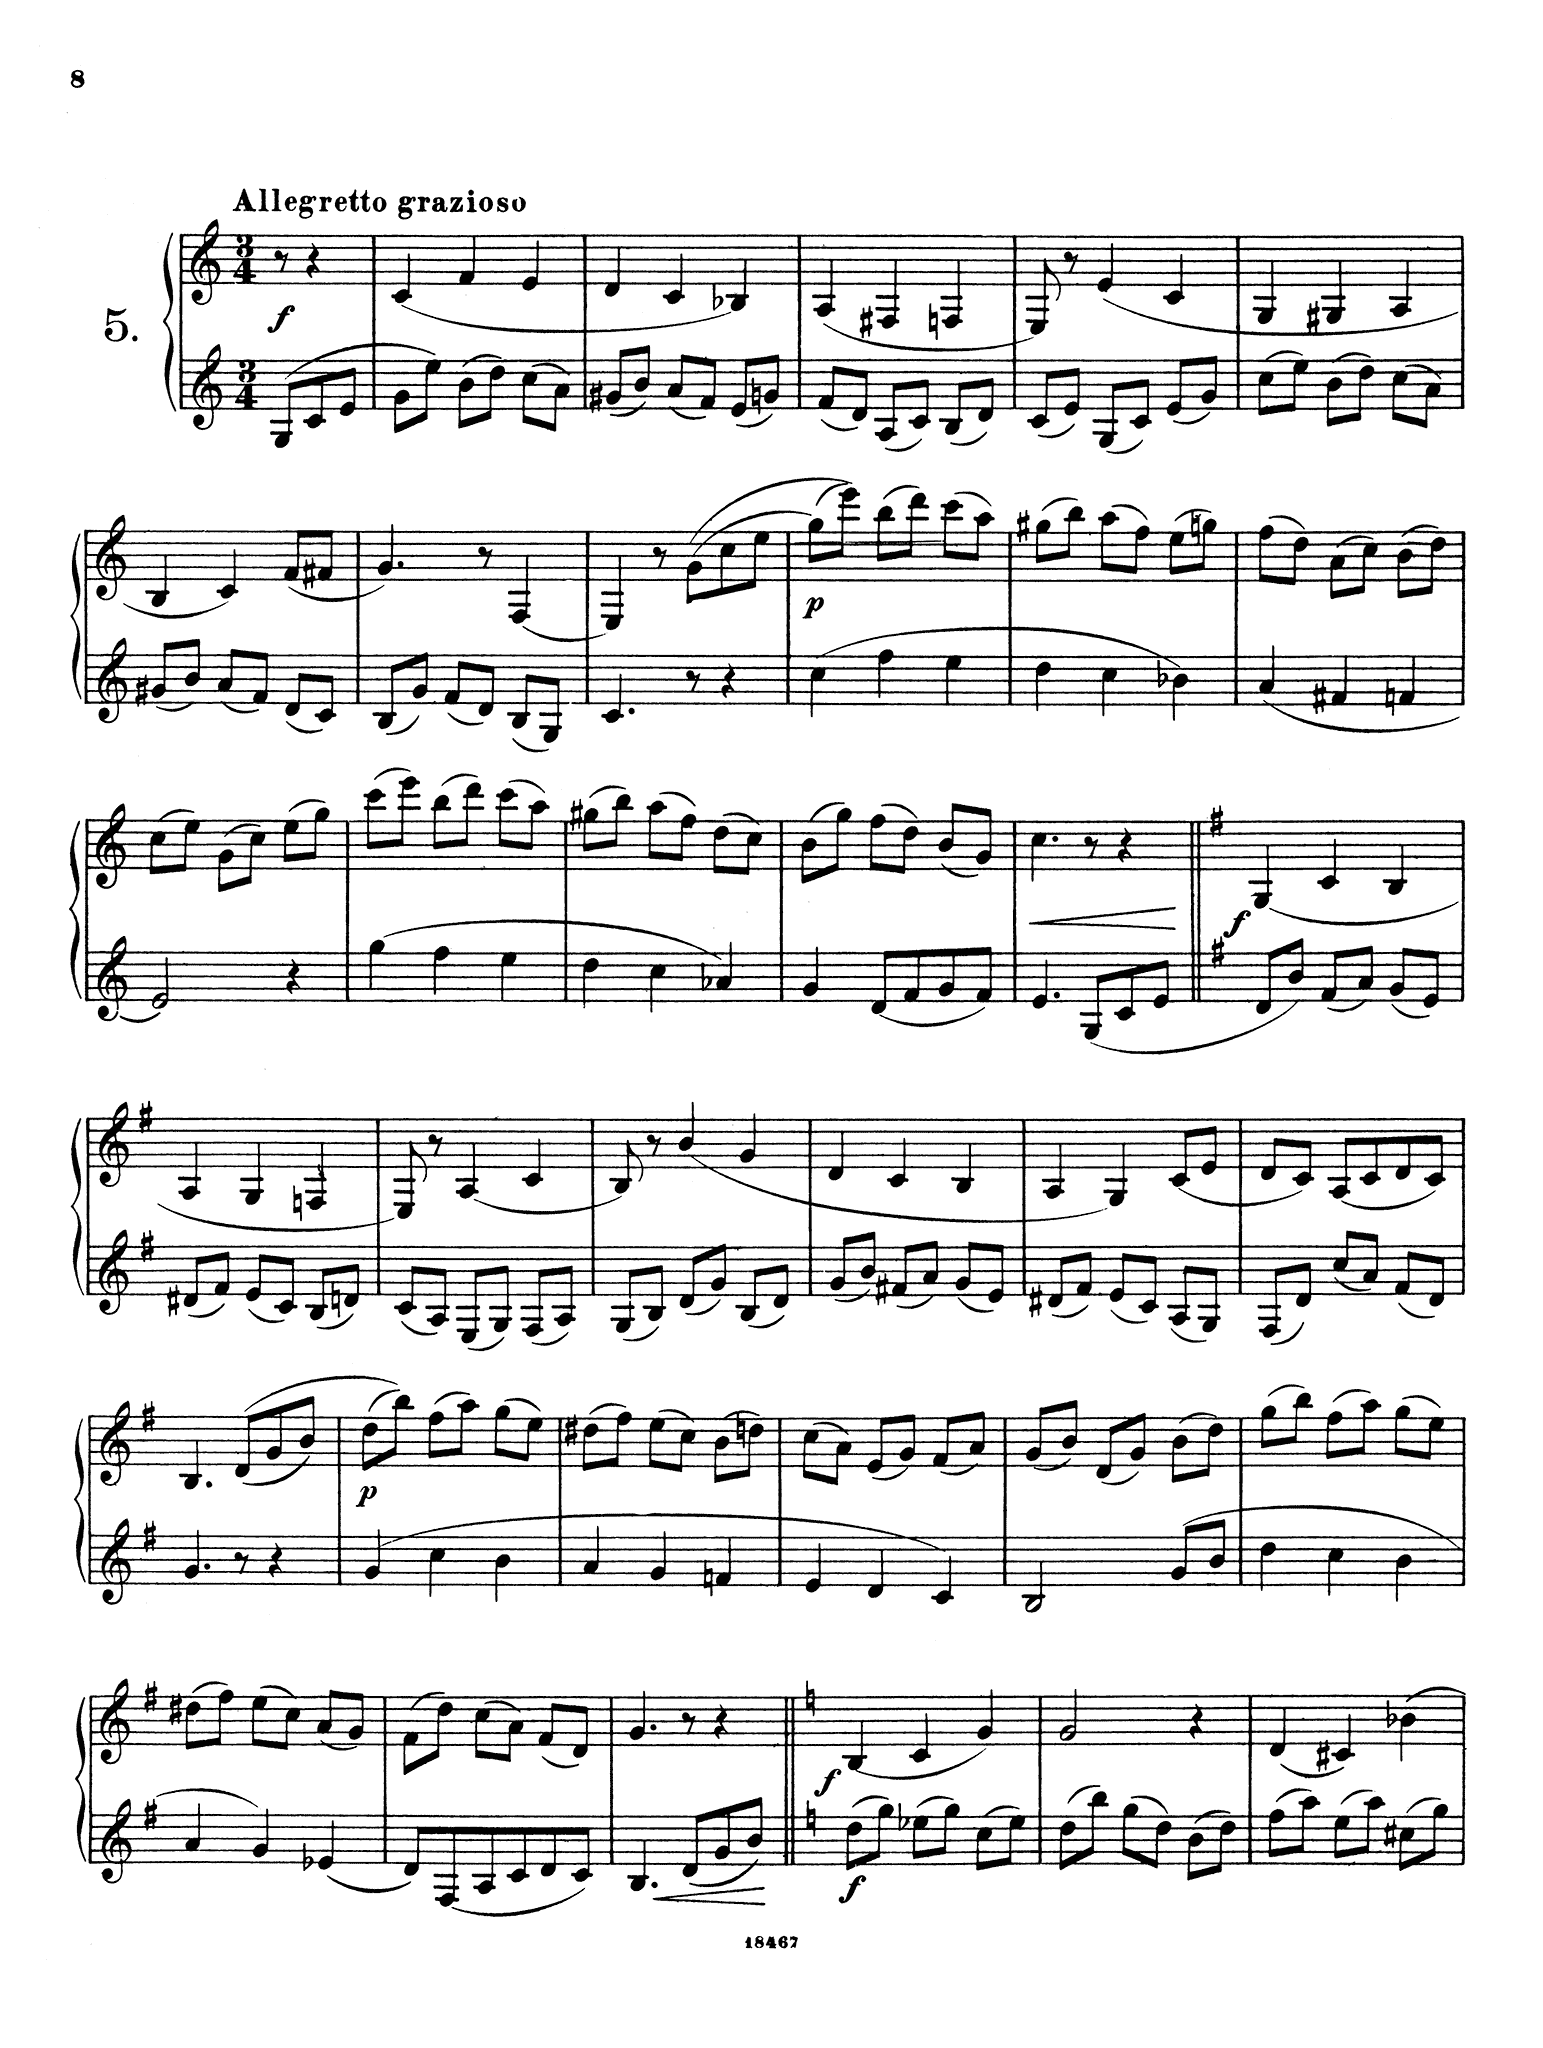 Wiedemann Clarinet Studies, Book 1 page 8